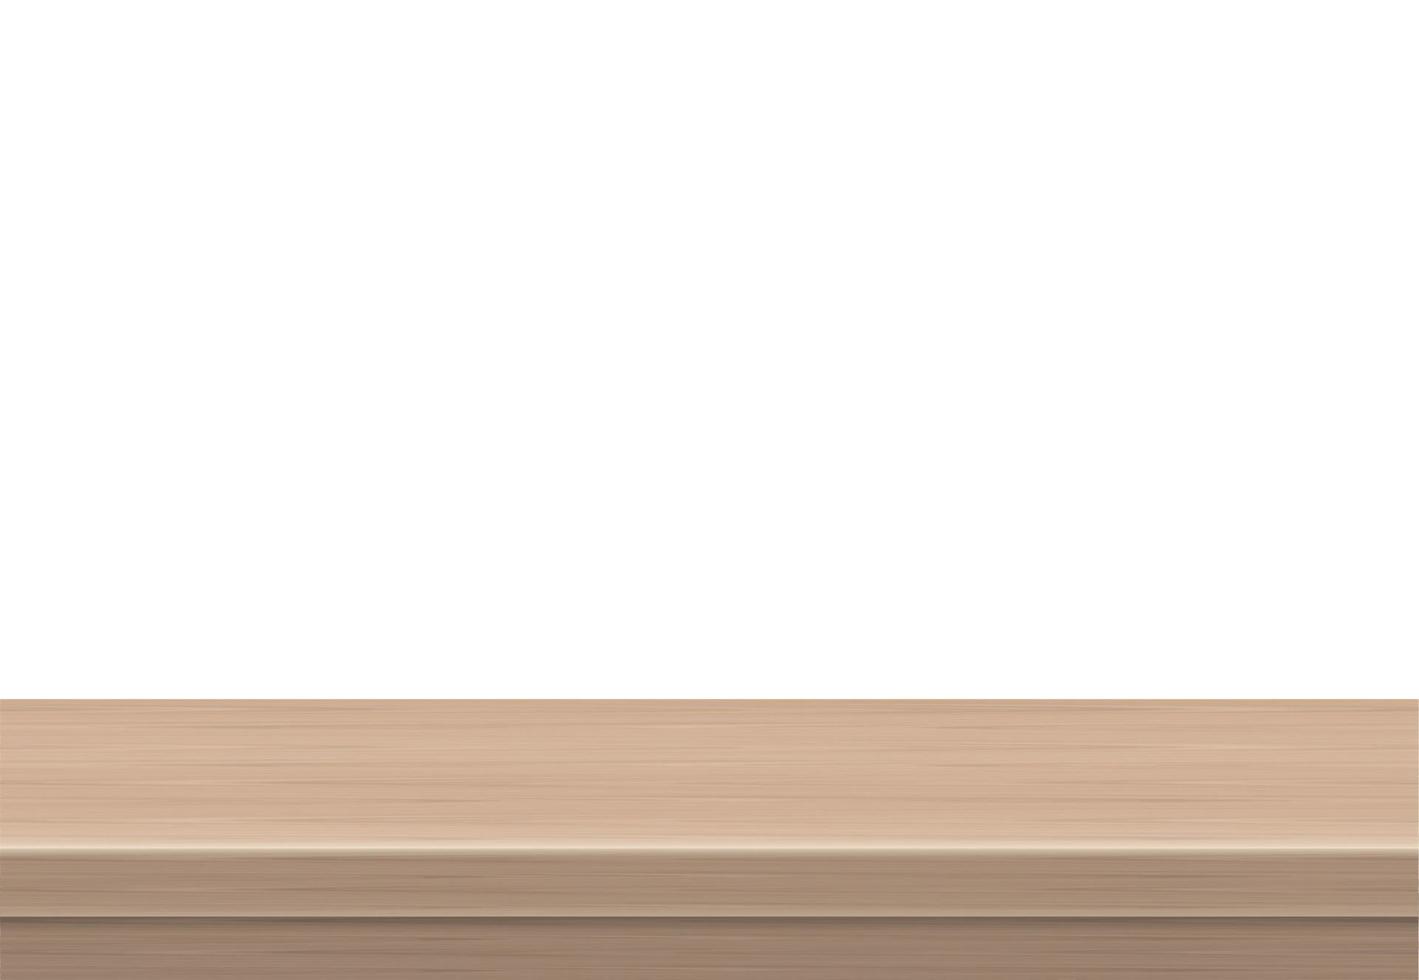 vista laterale vuota del tavolo in legno dello spazio libero, per il branding della tua copia. utilizzato per la visualizzazione o il montaggio di prodotti. concetto di stile vintage. superficie realistica marrone legno isolata su sfondo bianco. vettore 3d.